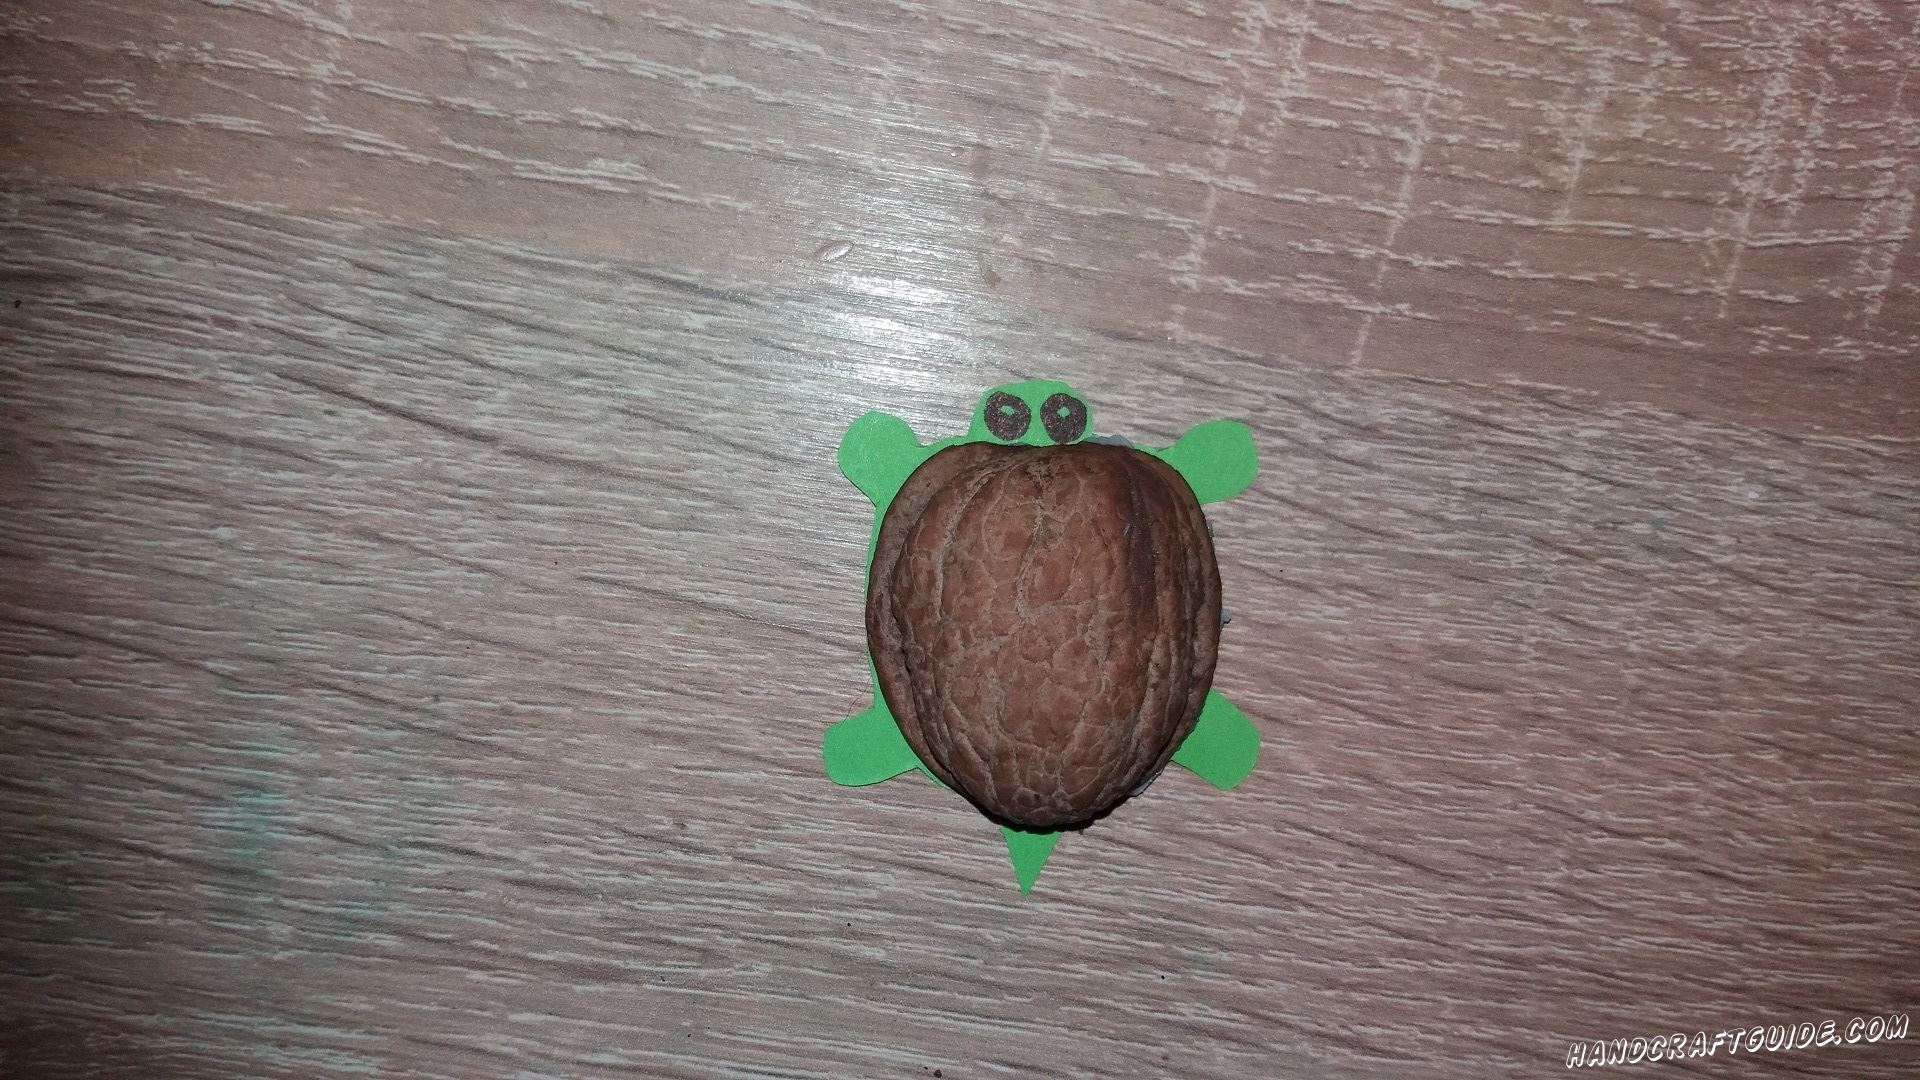 черепаха из скорлупы грецкого ореха очень легко